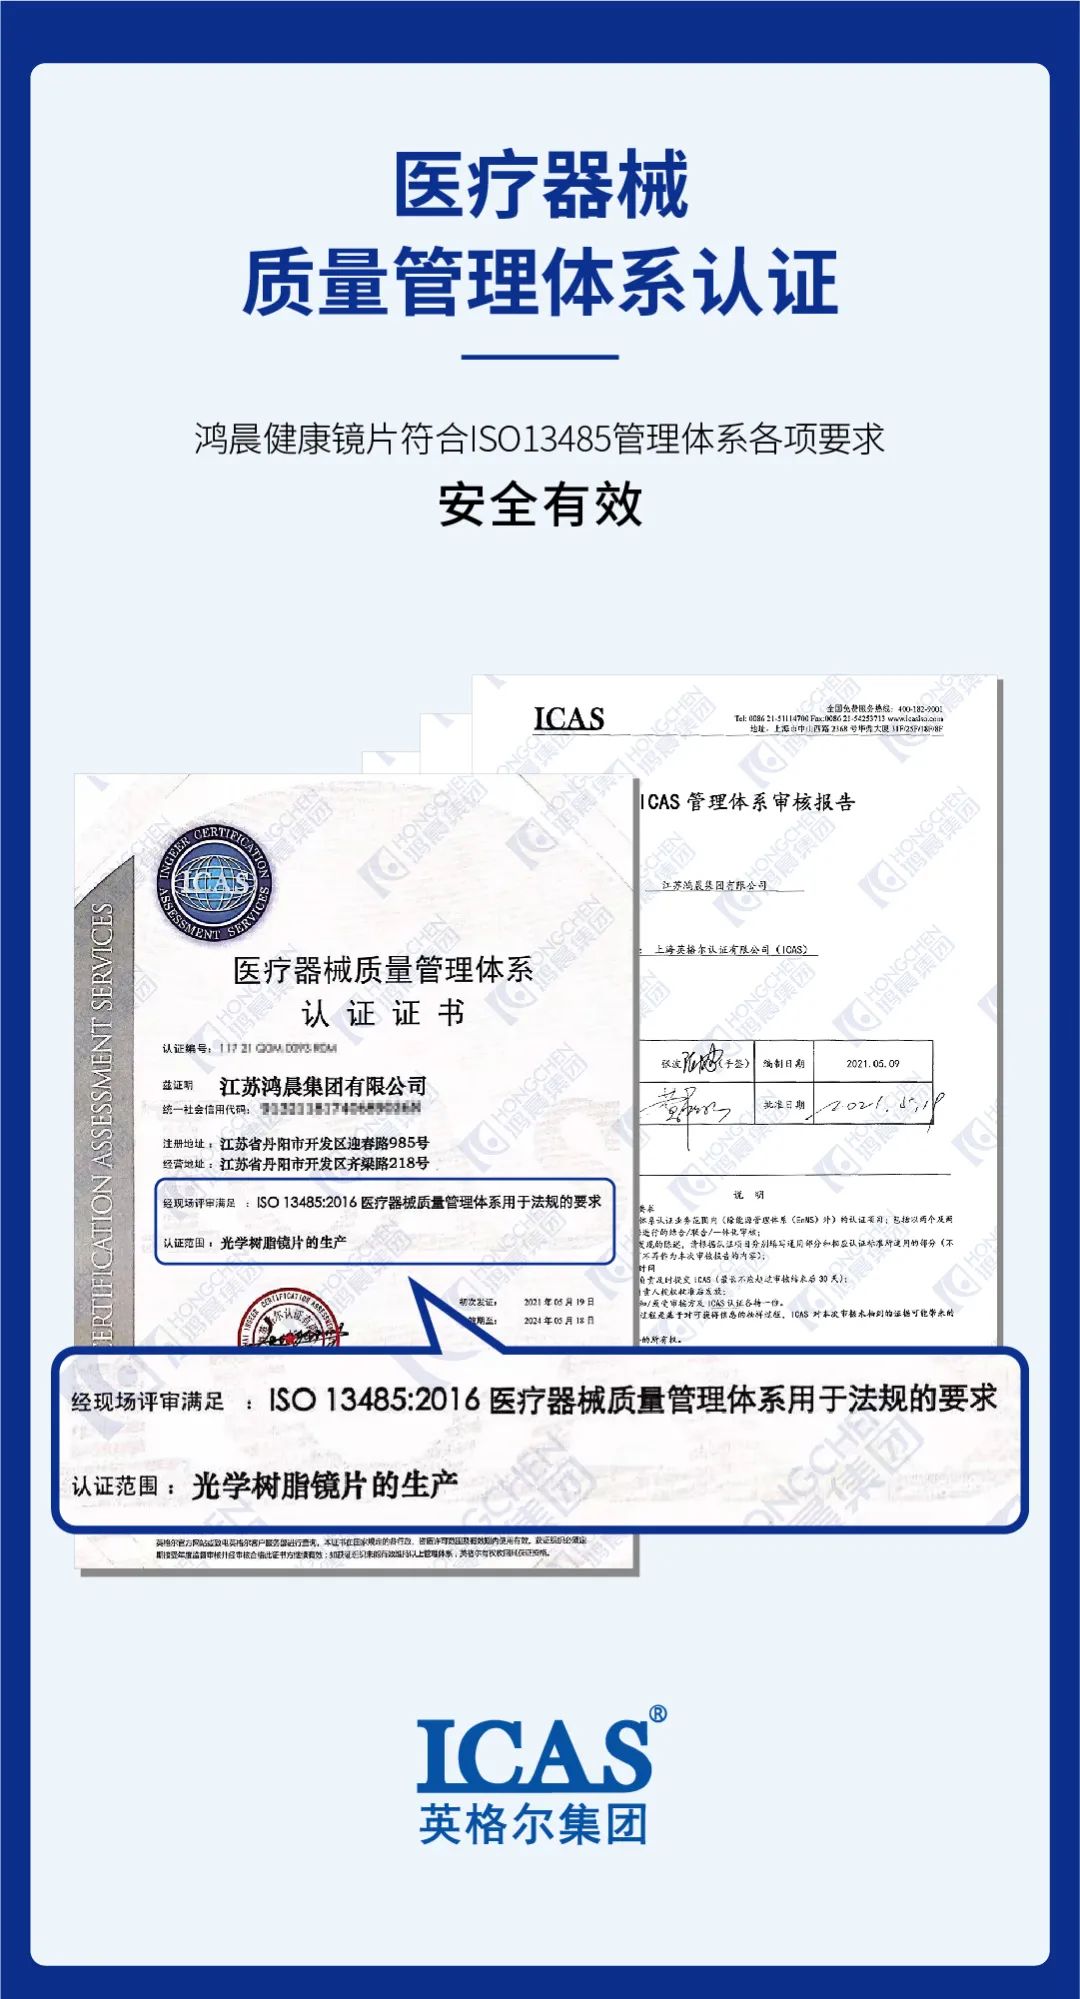 Hongchen linse vandt det medicinske sikkerhedssystem certificering